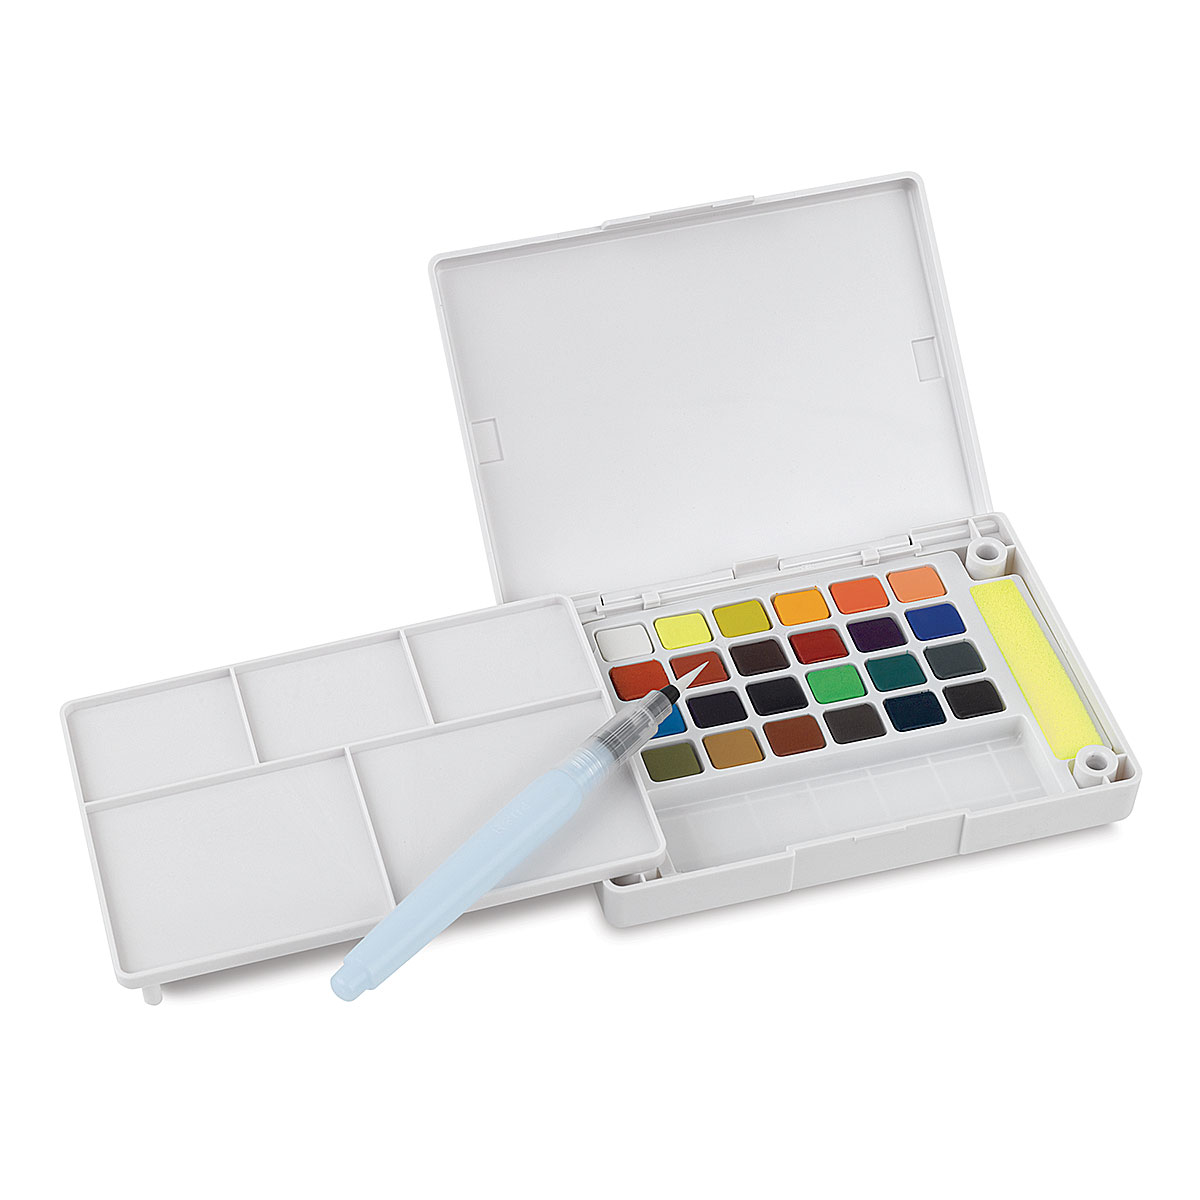  SAKURA Koi Studio Kit - Watercolor Sets for Studio Art or Art  On the Go - 60 Colors - 2 Water Brushes - 2 Sponges - 2 Palettes